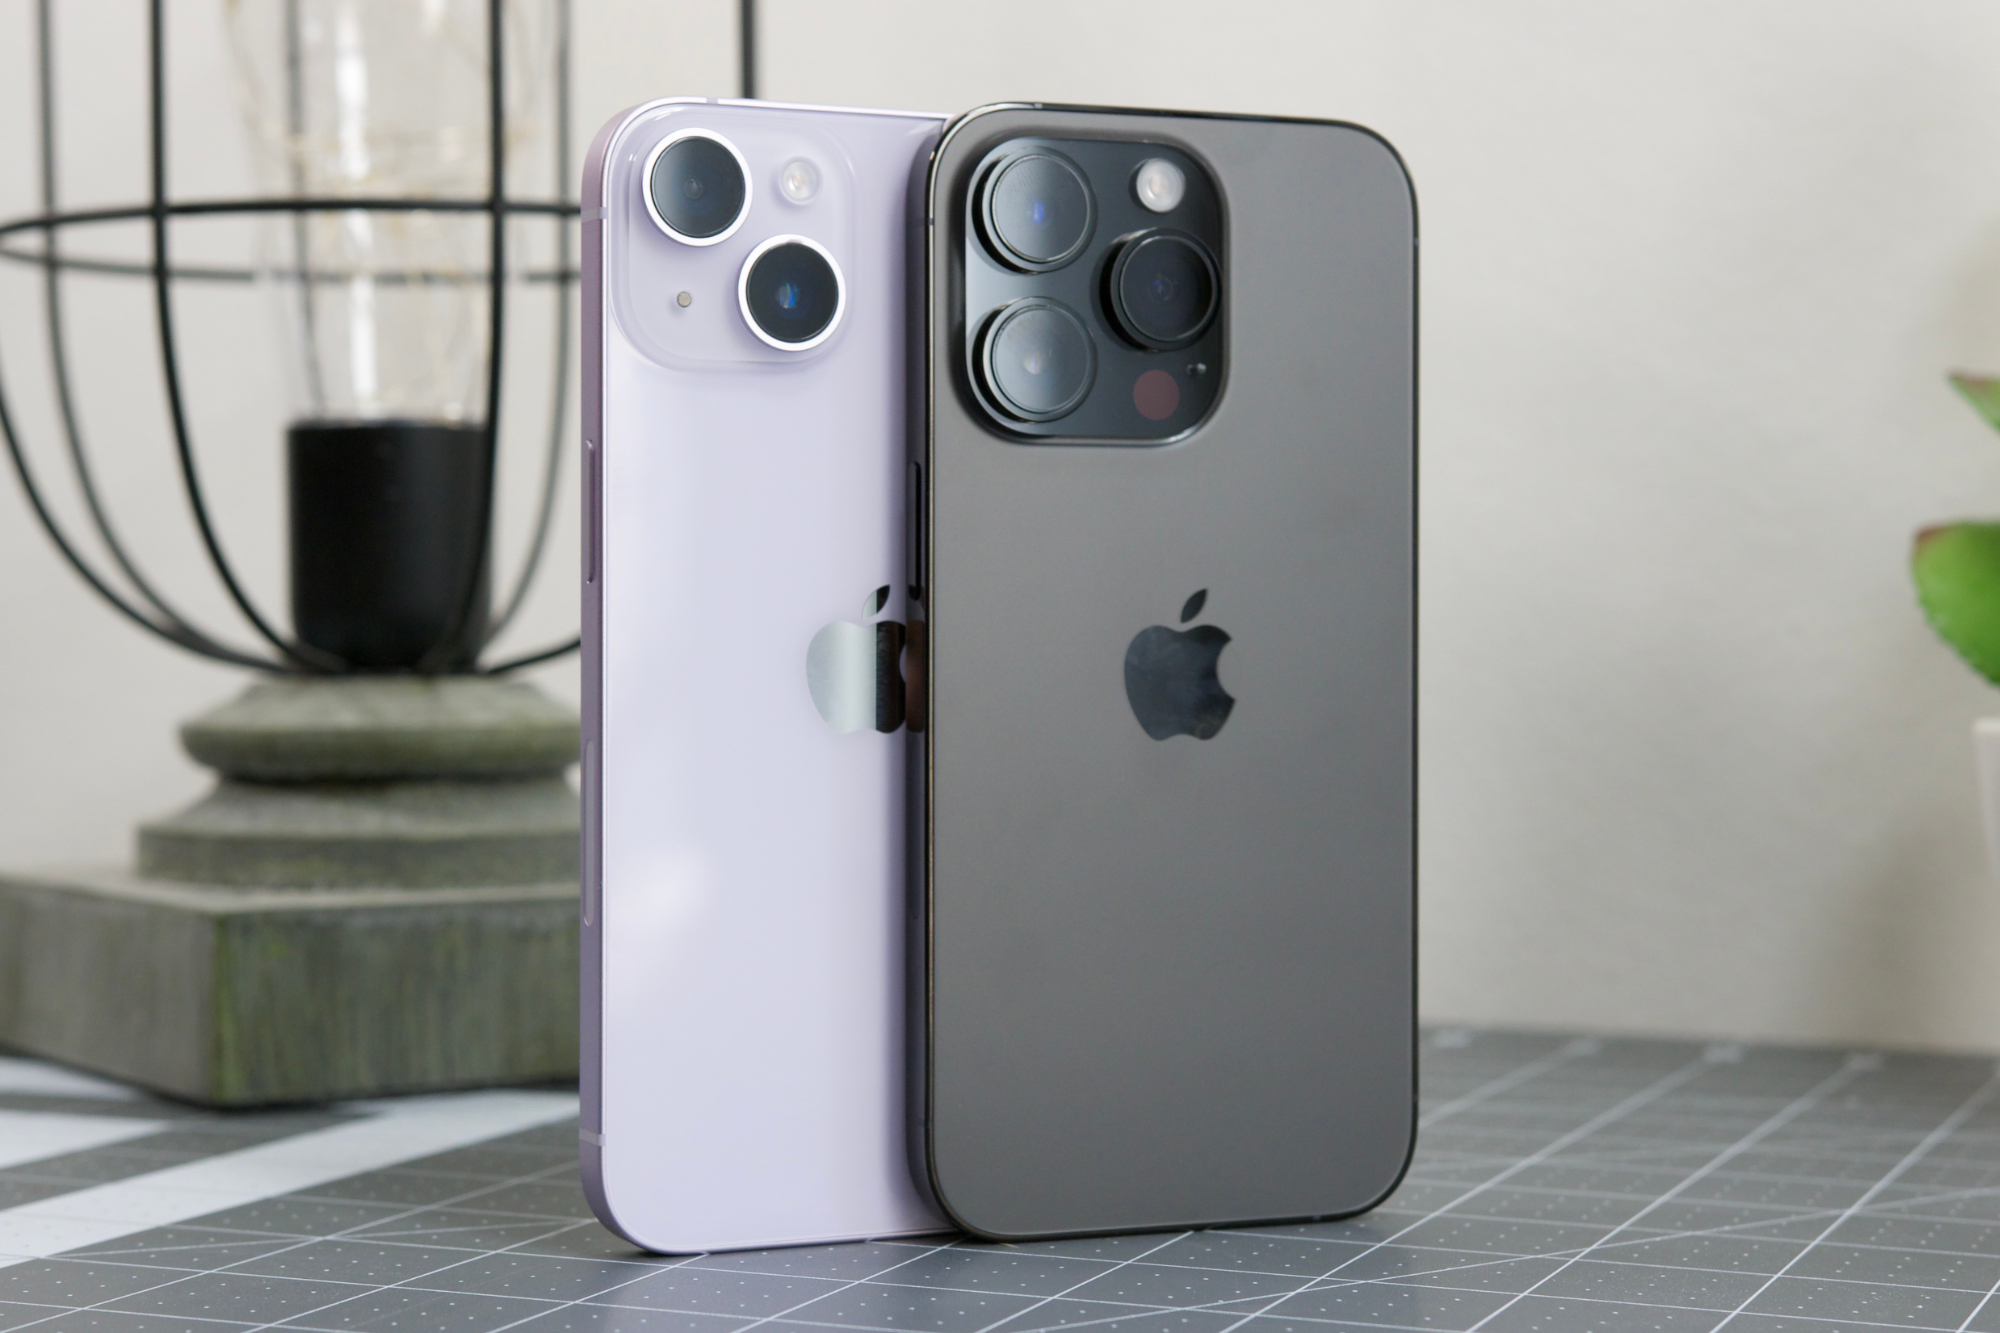 Bộ hình nền iPhone 11, iPhone 11 Pro và iPhone 11 Pro Max đẹp nhất | Hình  nền iphone, Hình nền, Hình